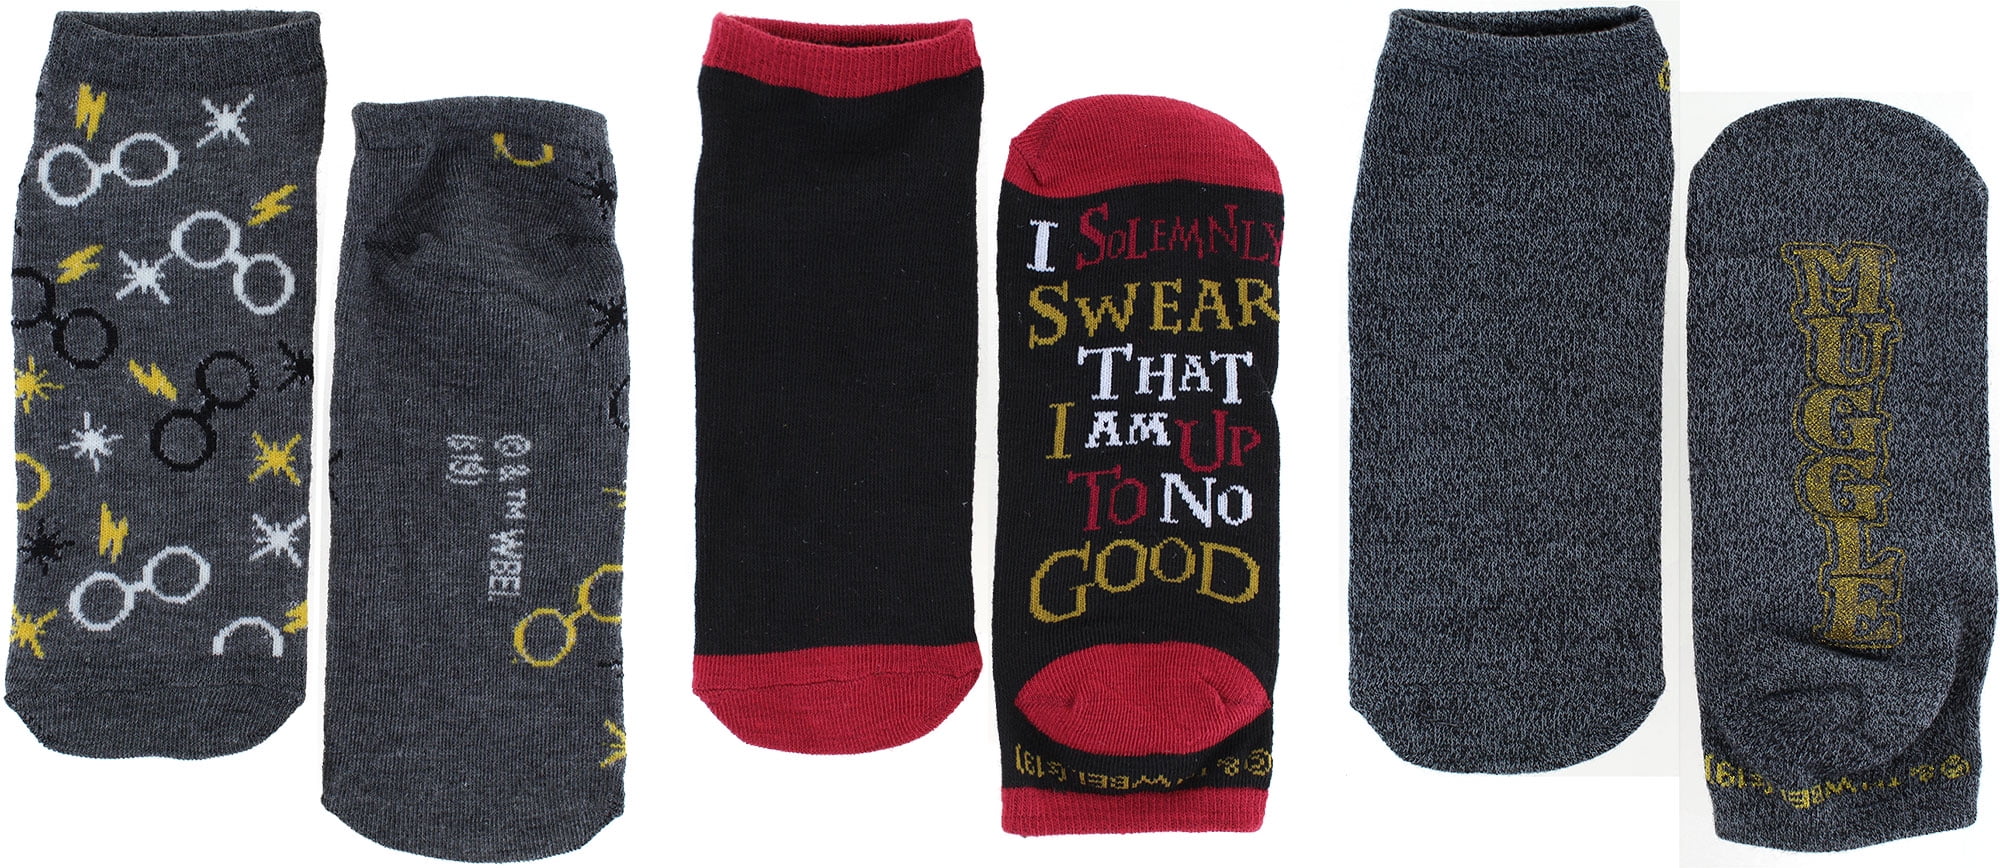 Harry Potter Dobby Juniors/Womens 5 Pack Ankle Socks Size 4-10